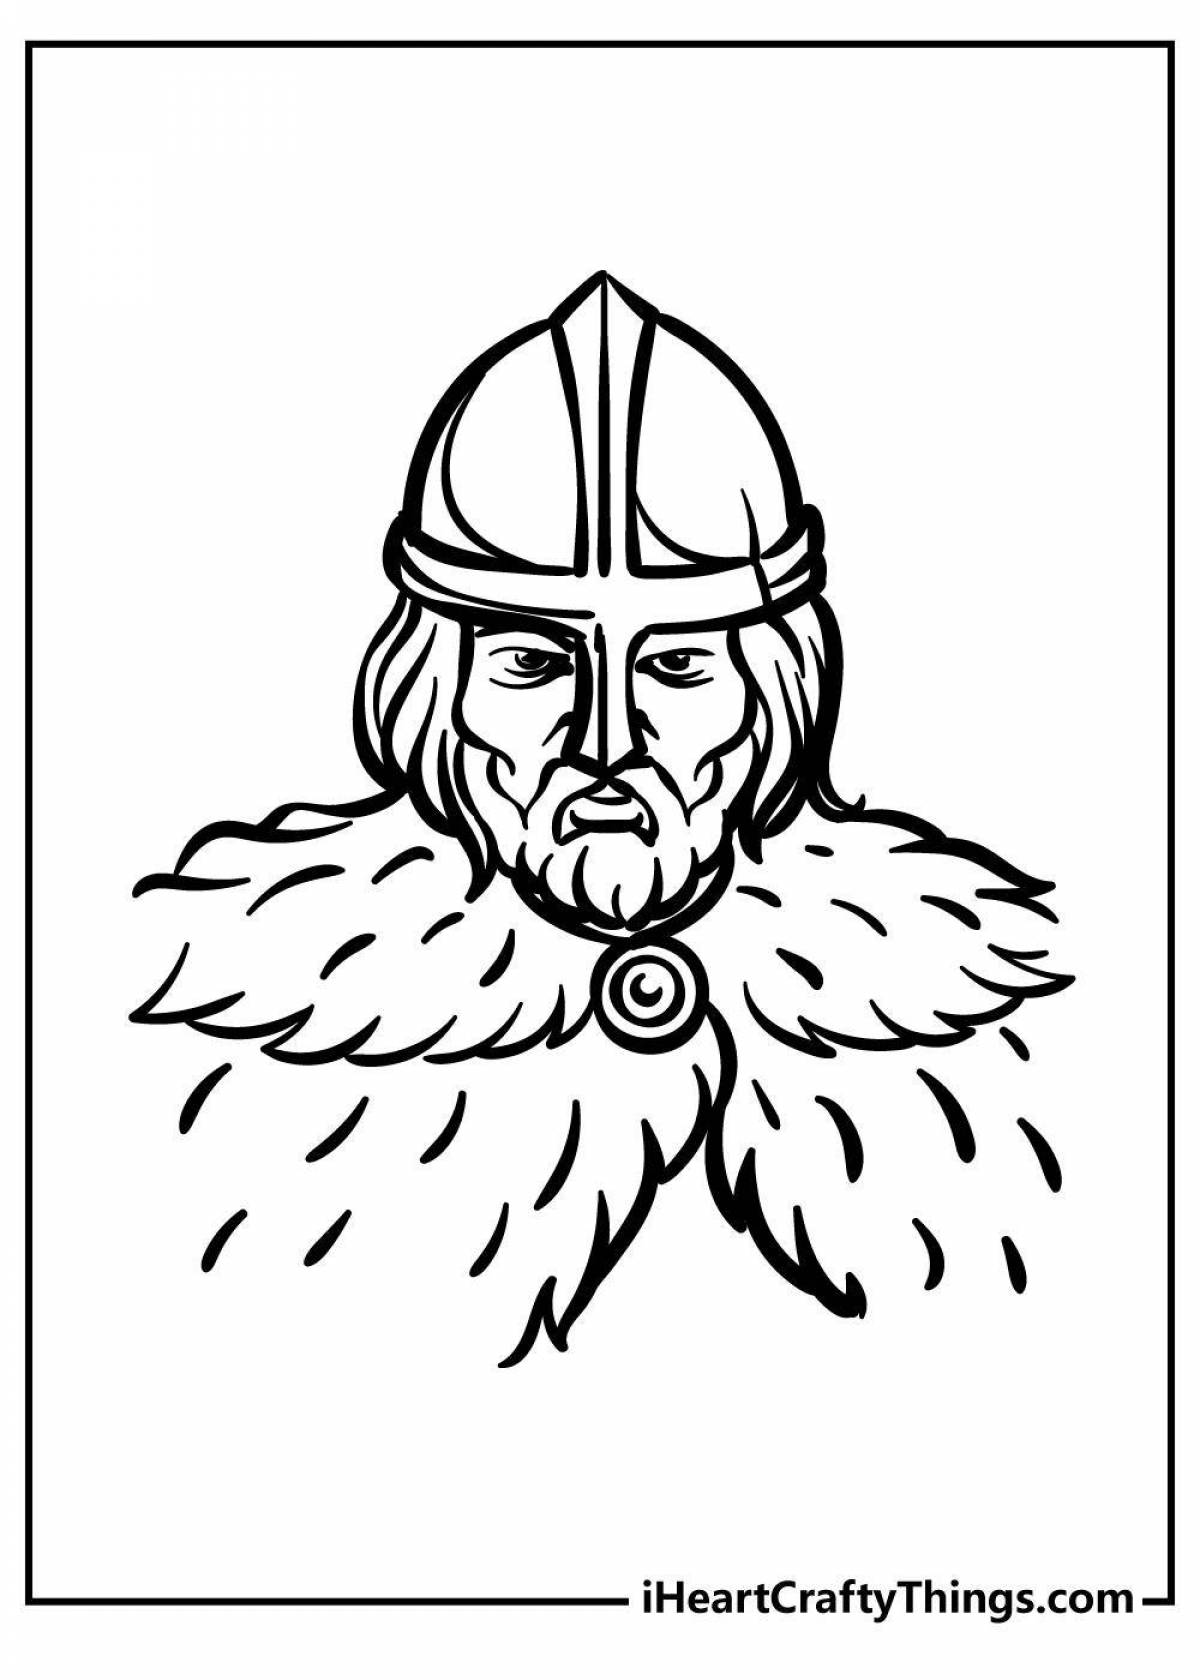 Раскраска смелые лица викингов